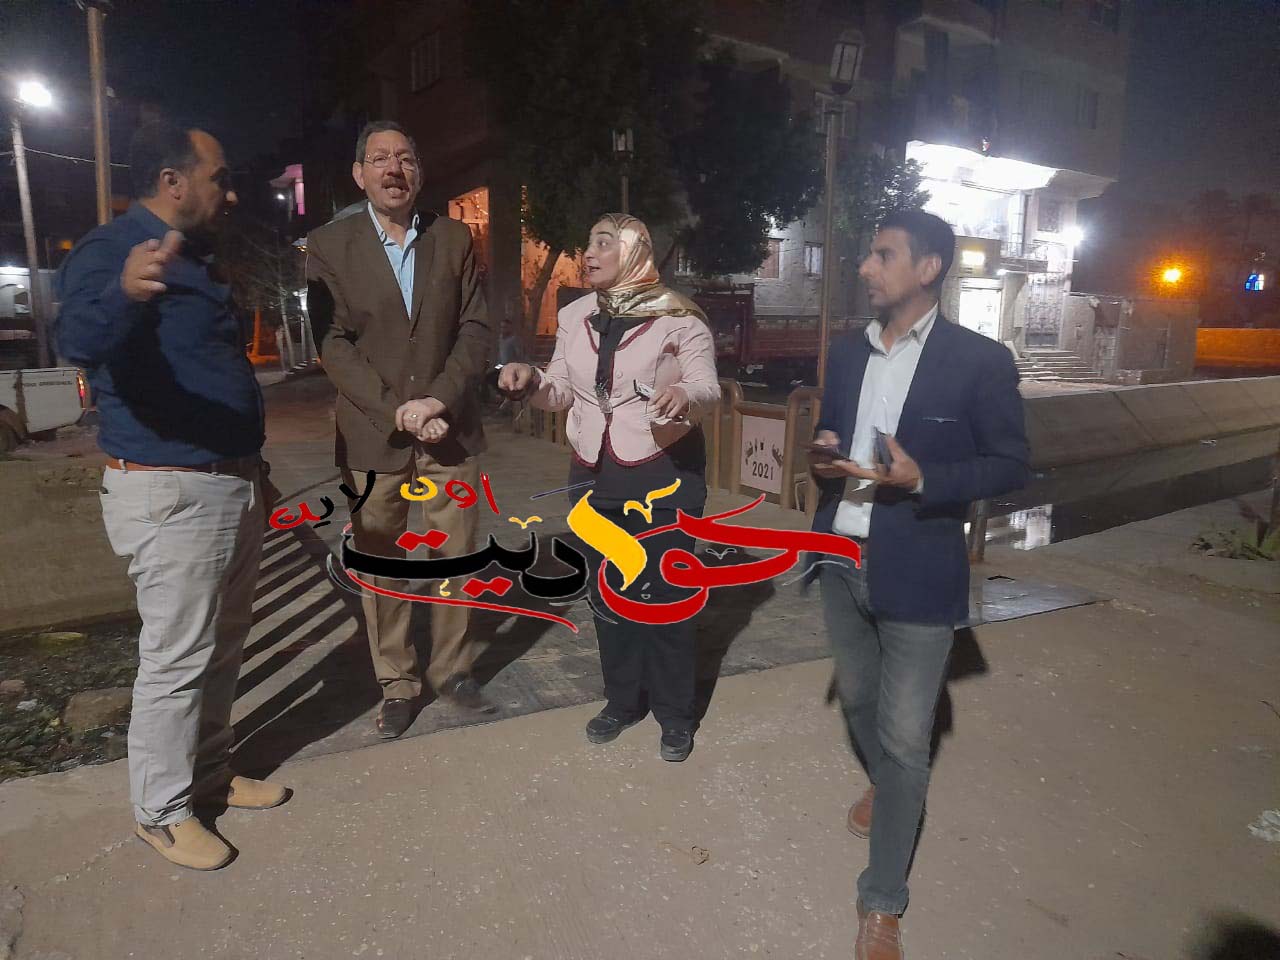 شاهد بالصور .. جمعية شباب ام خنان تصطحب رئيس مدينة الحوامدية فى جولة داخل القرية